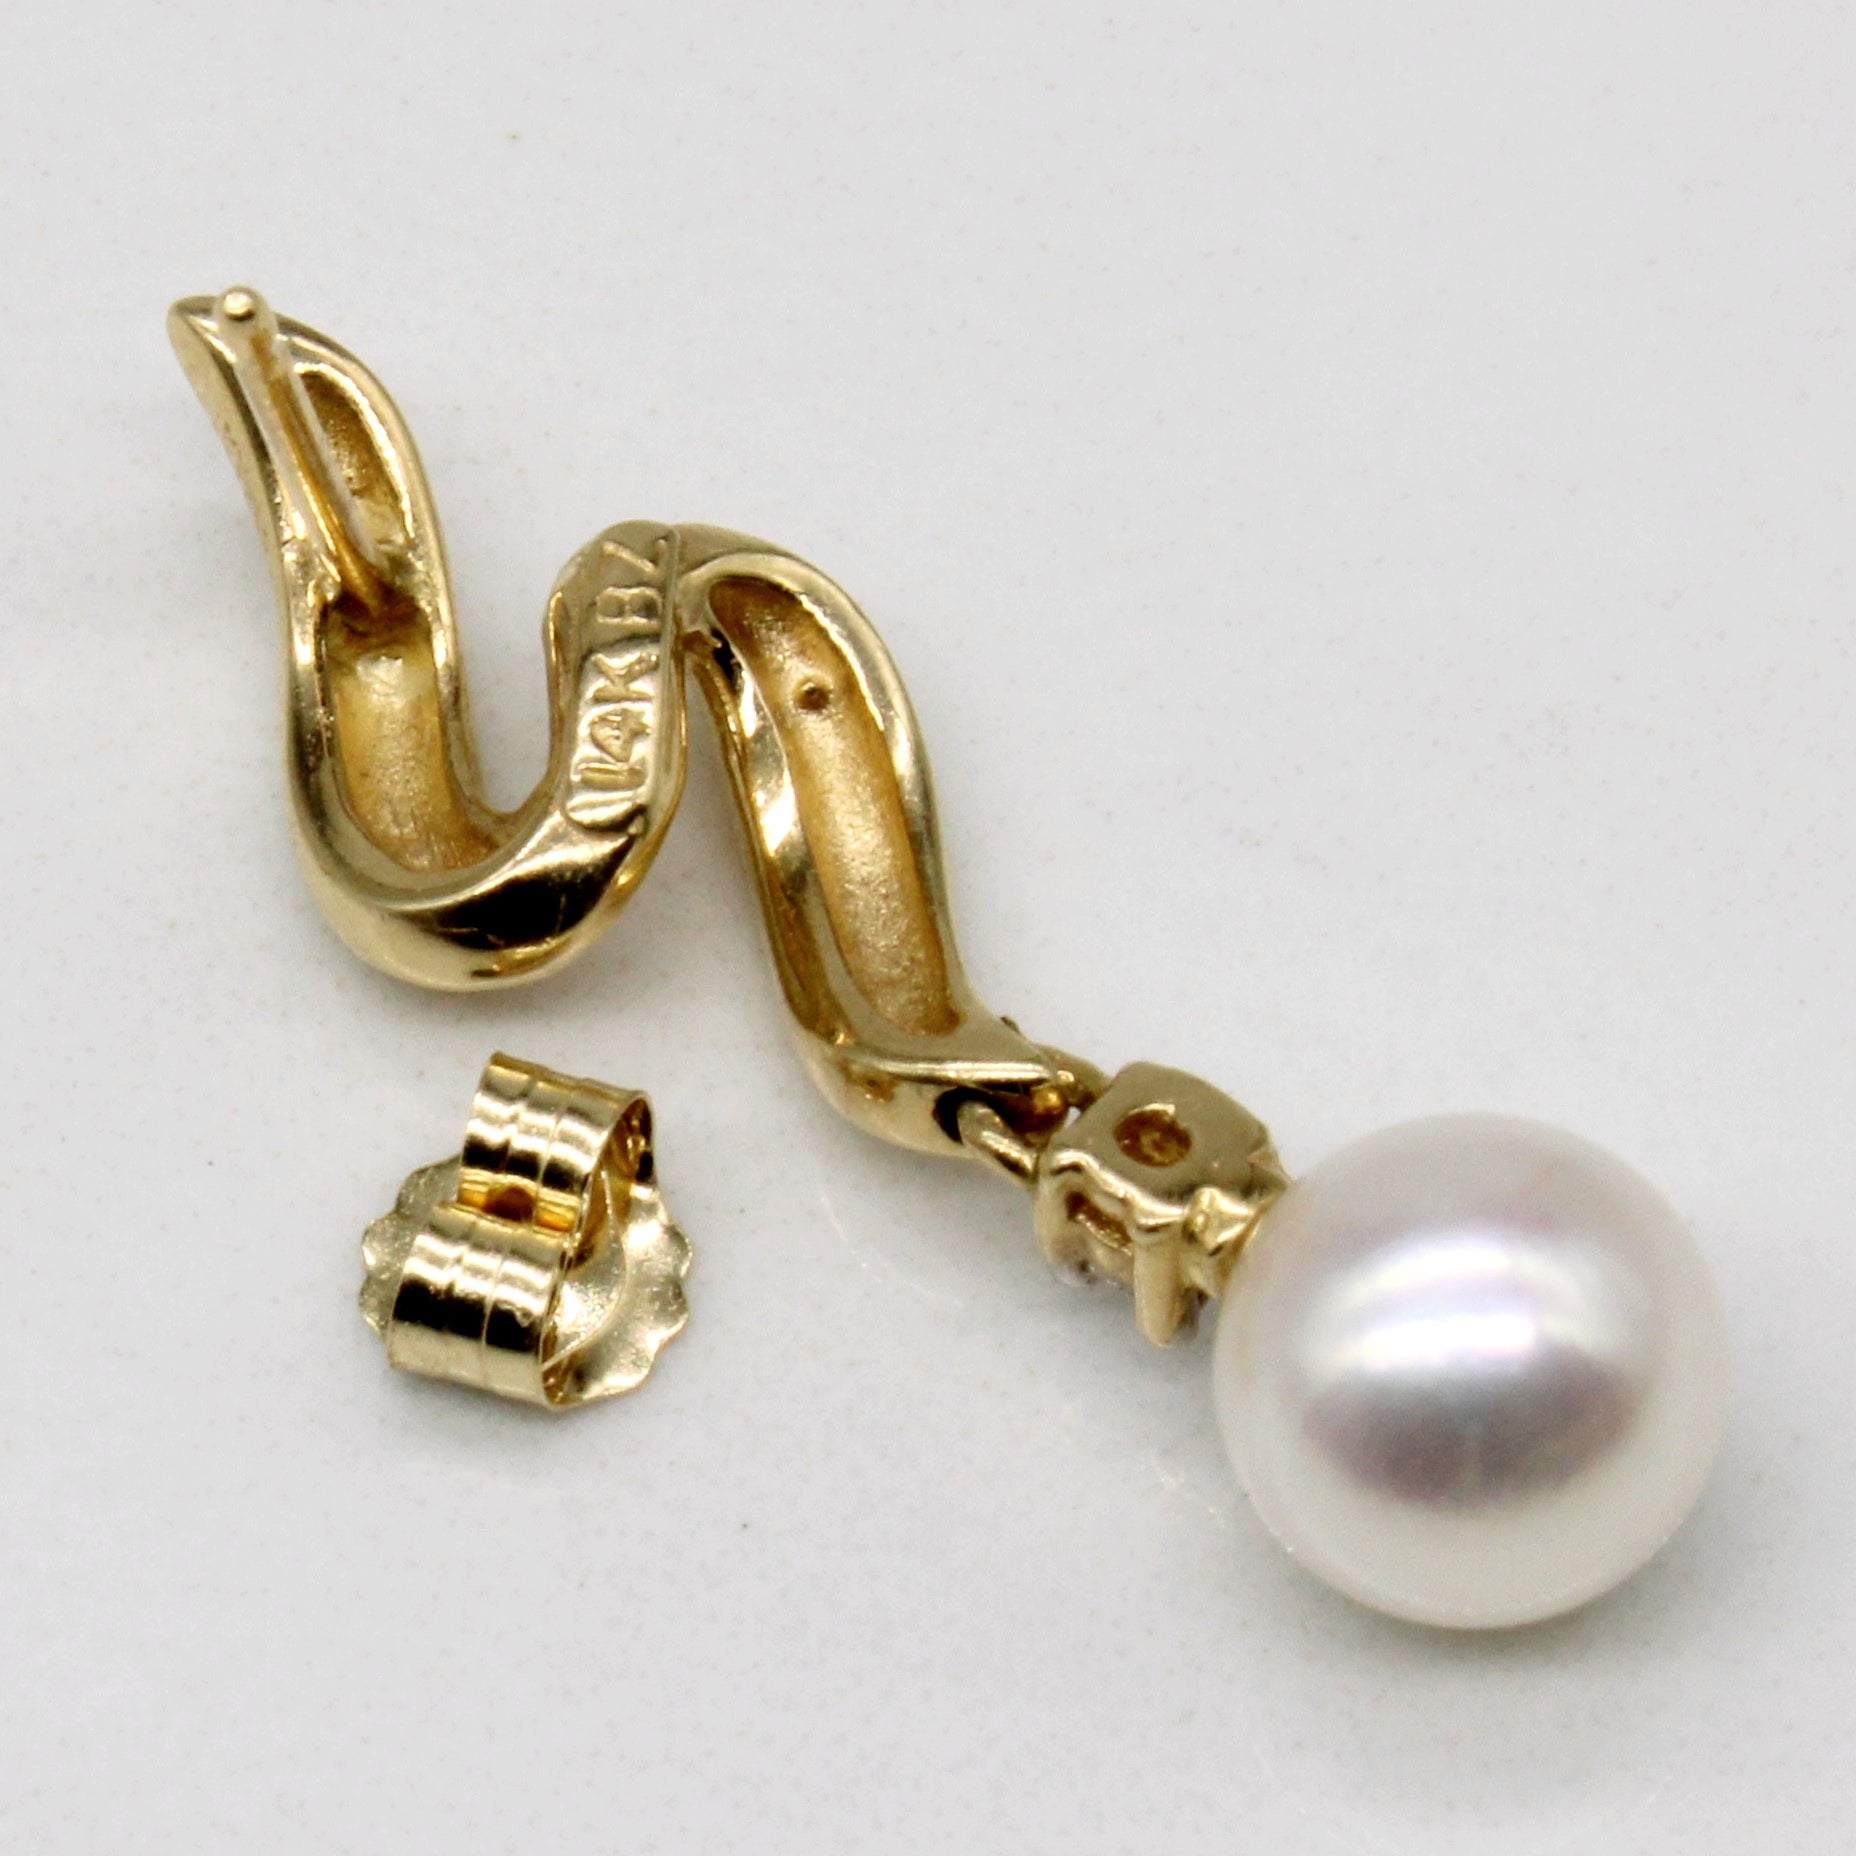 Pearl & Diamond Earrings | 0.05ctw |